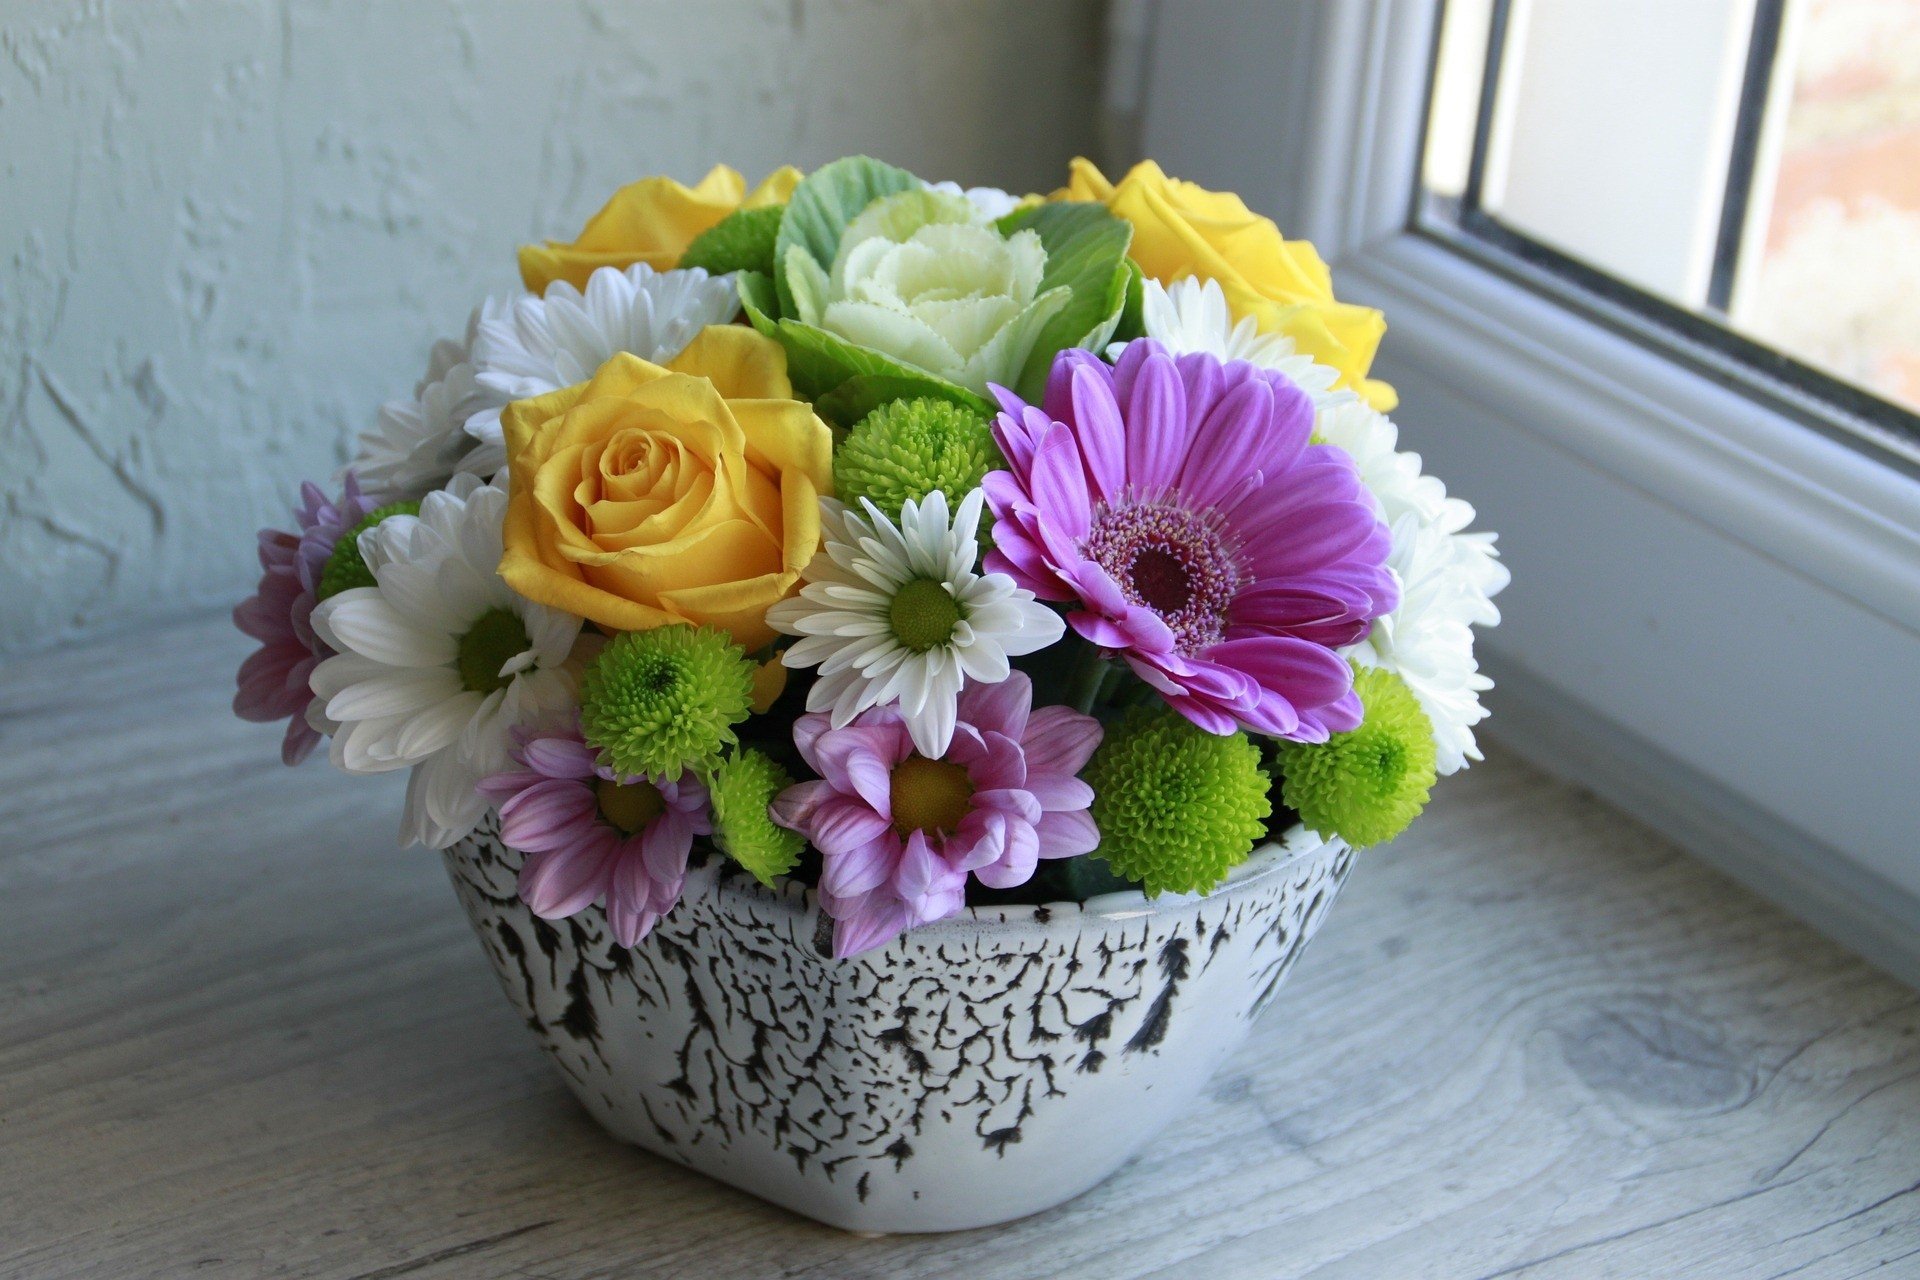 Jesienią i zimą nie rezygnuj z kwiatów. Polecamy najtrwalsze kwiaty do  wazonu, które łatwo kupić właśnie teraz. Ozdobią dom i poprawią humor |  Gazeta Wrocławska